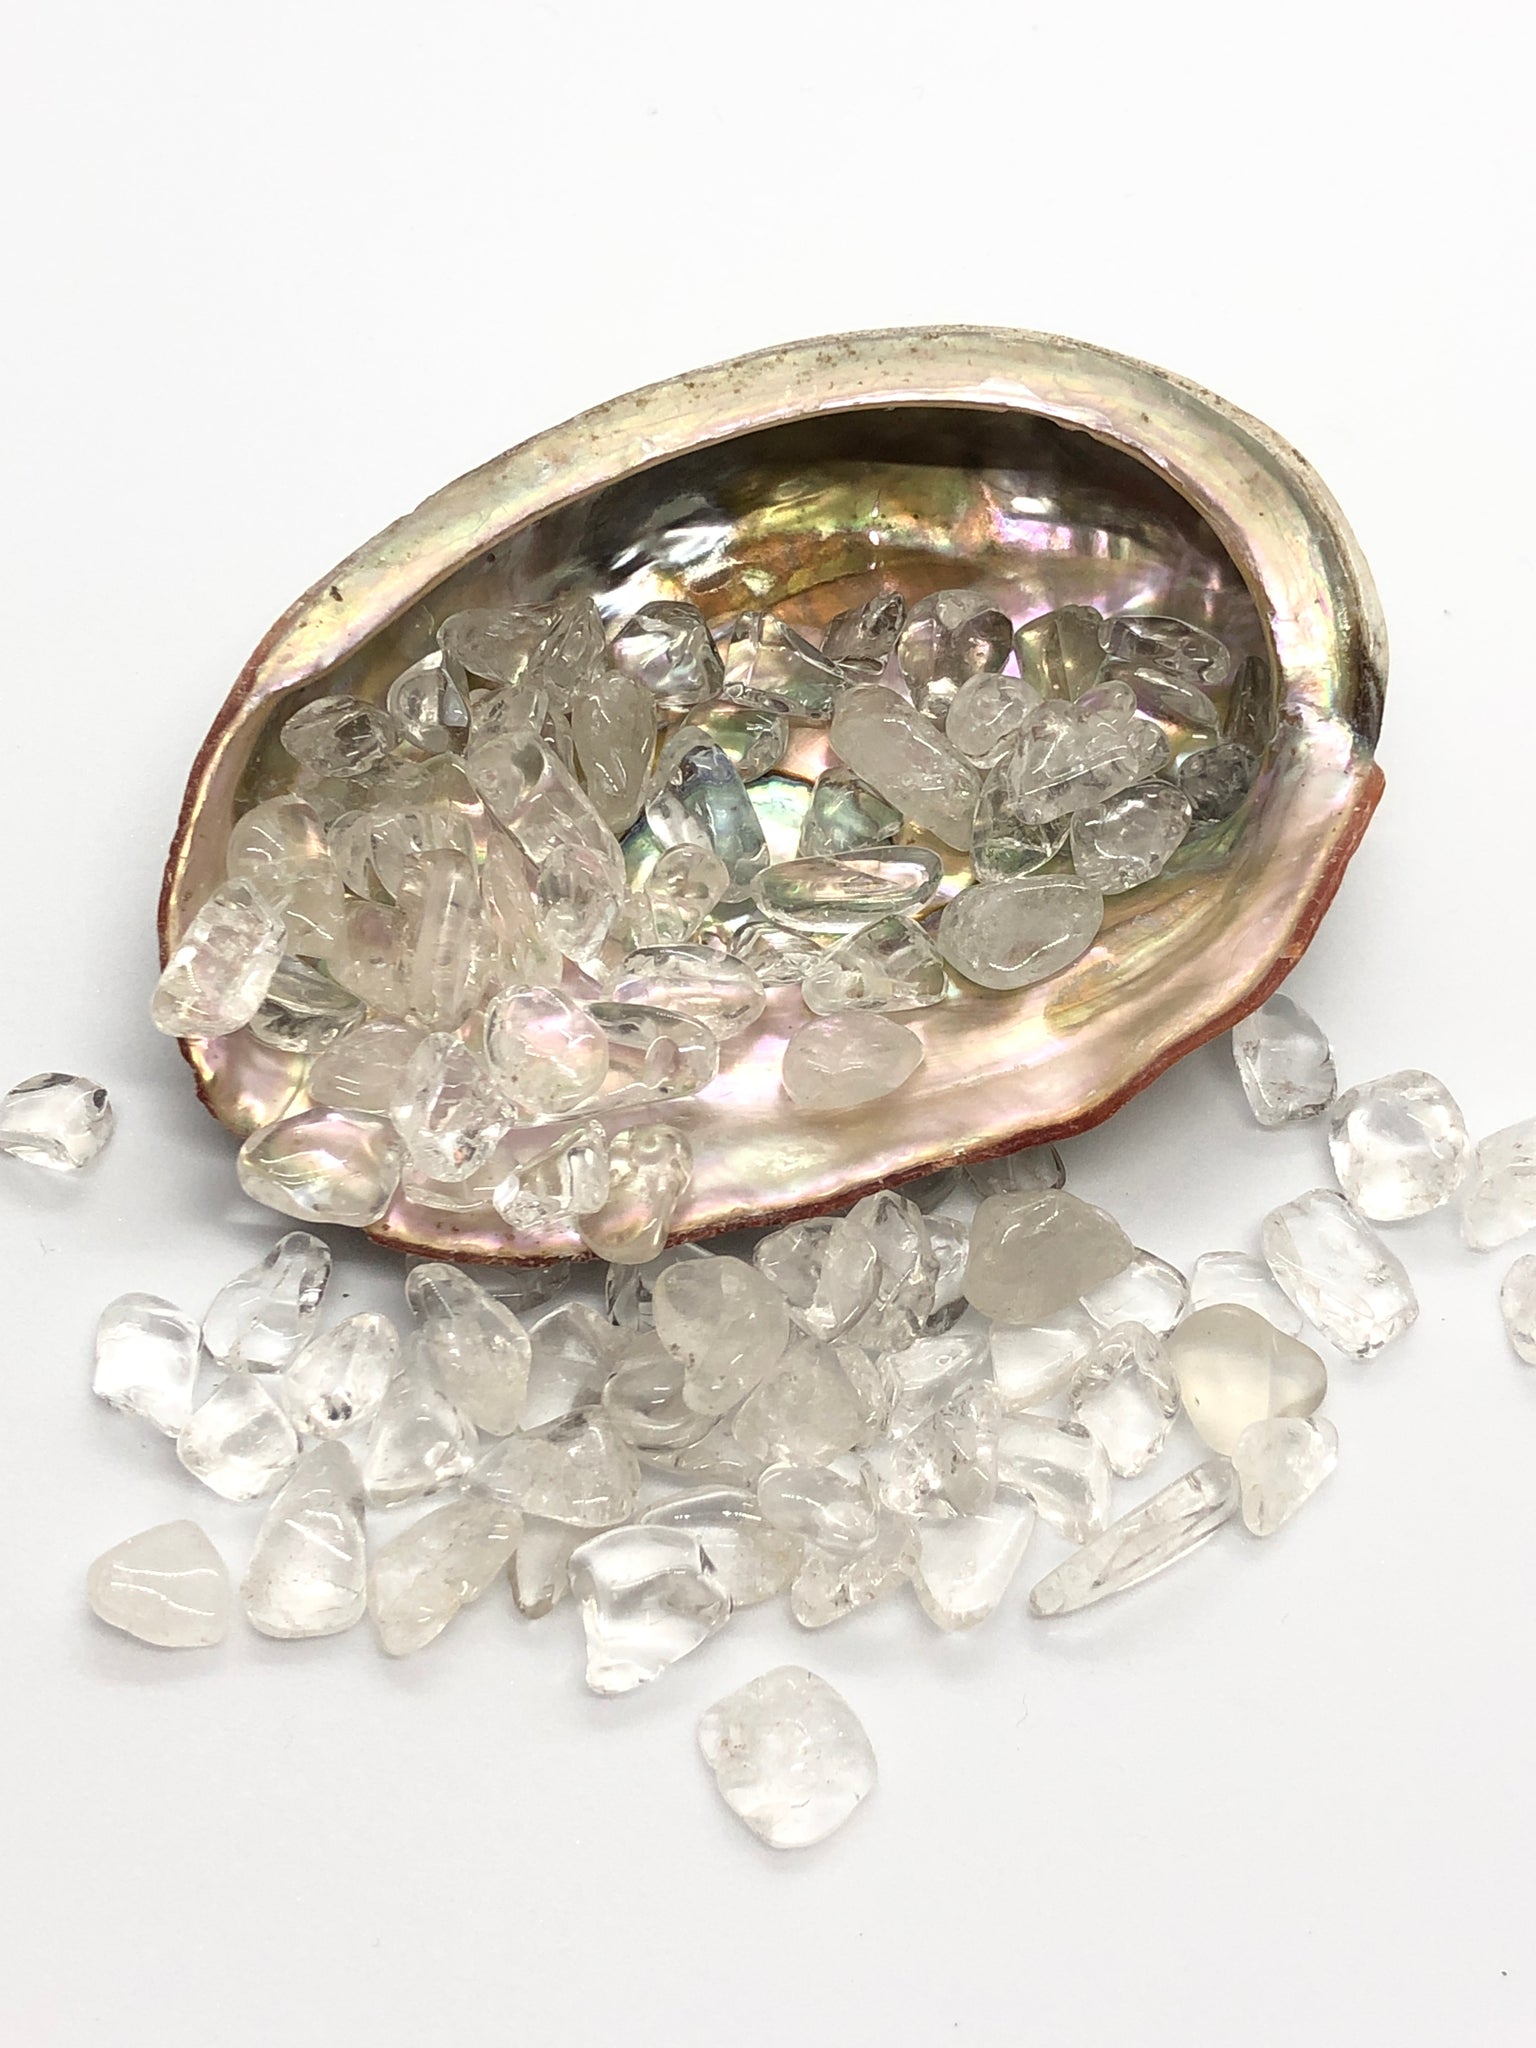 Abalone schelp gevuld met bergkristal